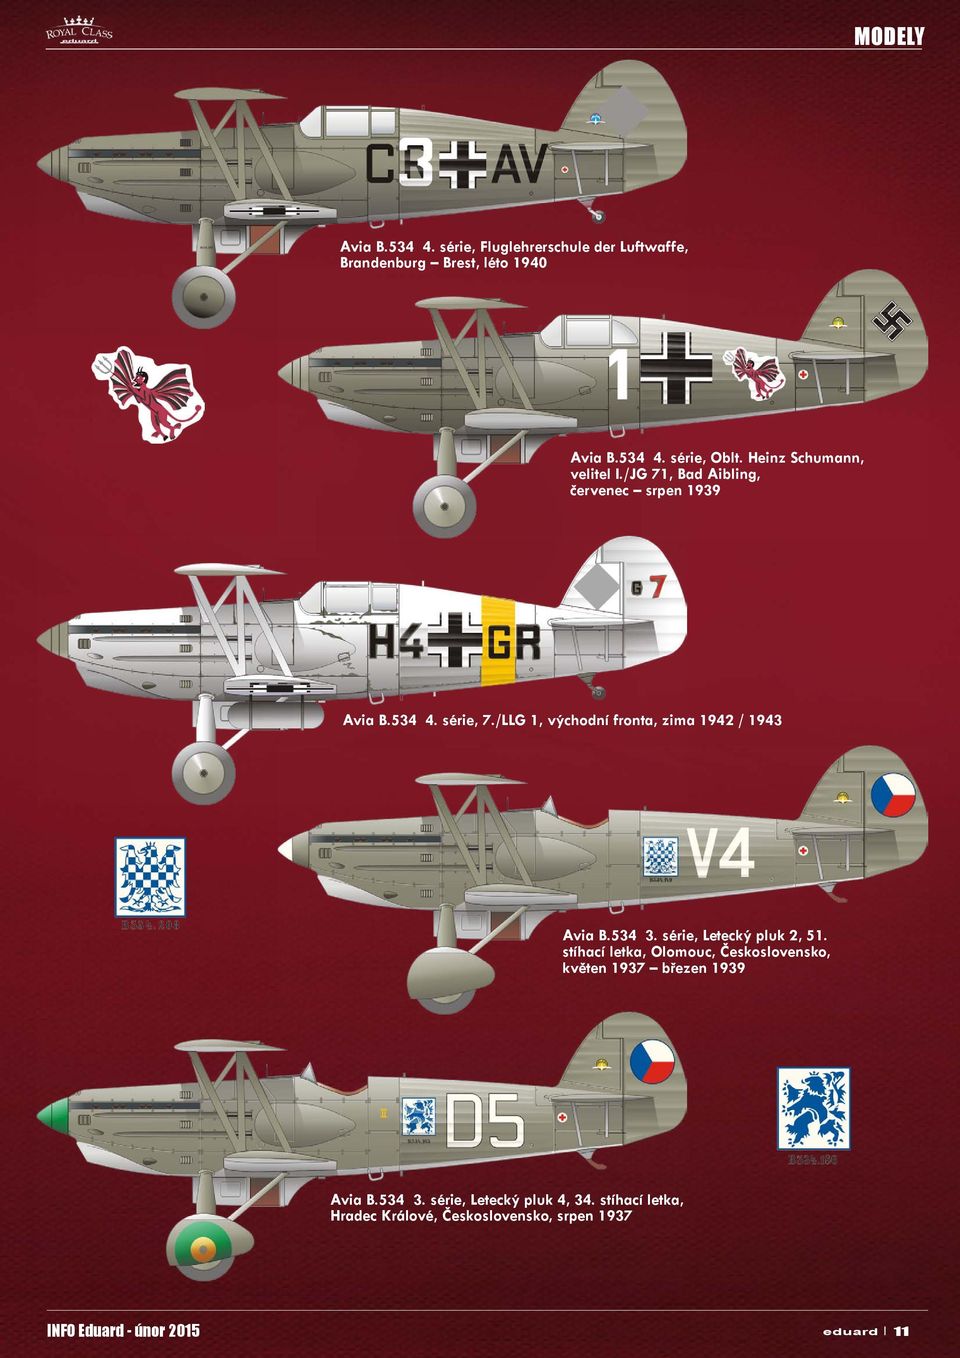 /LLG 1, východní fronta, zima 1942 / 1943 Avia B.534 3. série, Letecký pluk 2, 51.